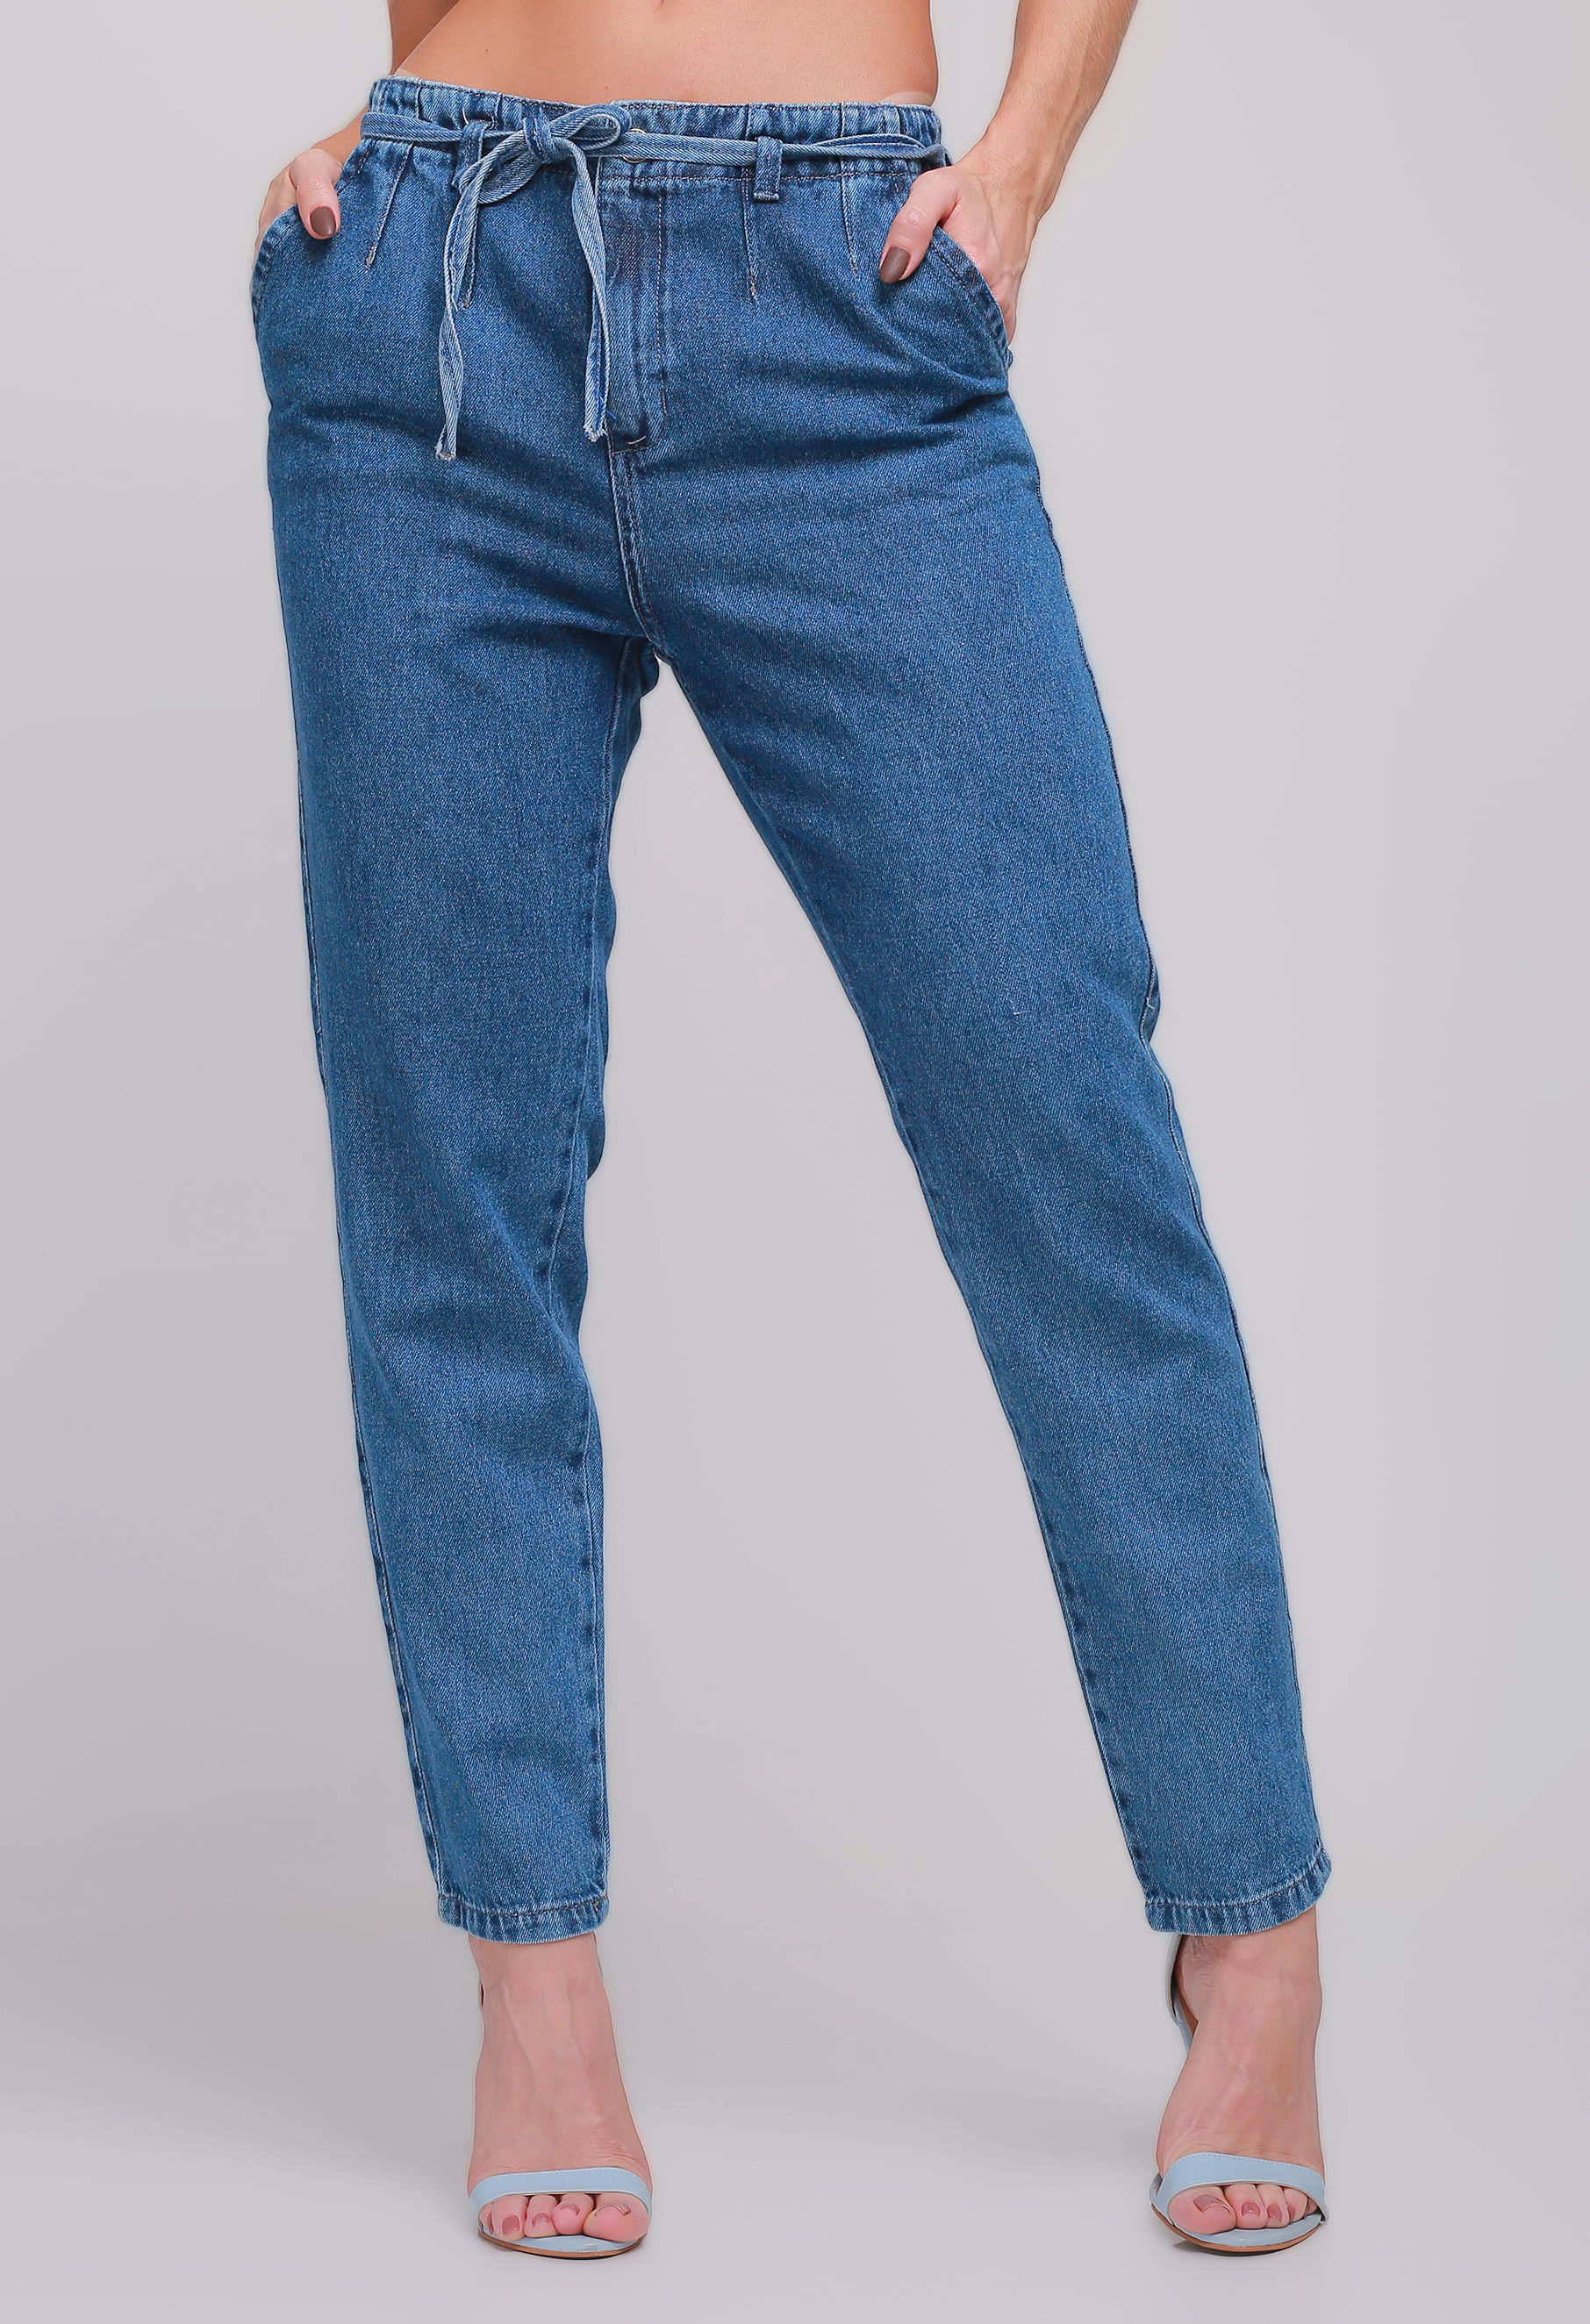 Varejo com preço de atacado: loja vende jeans da marca 767 por